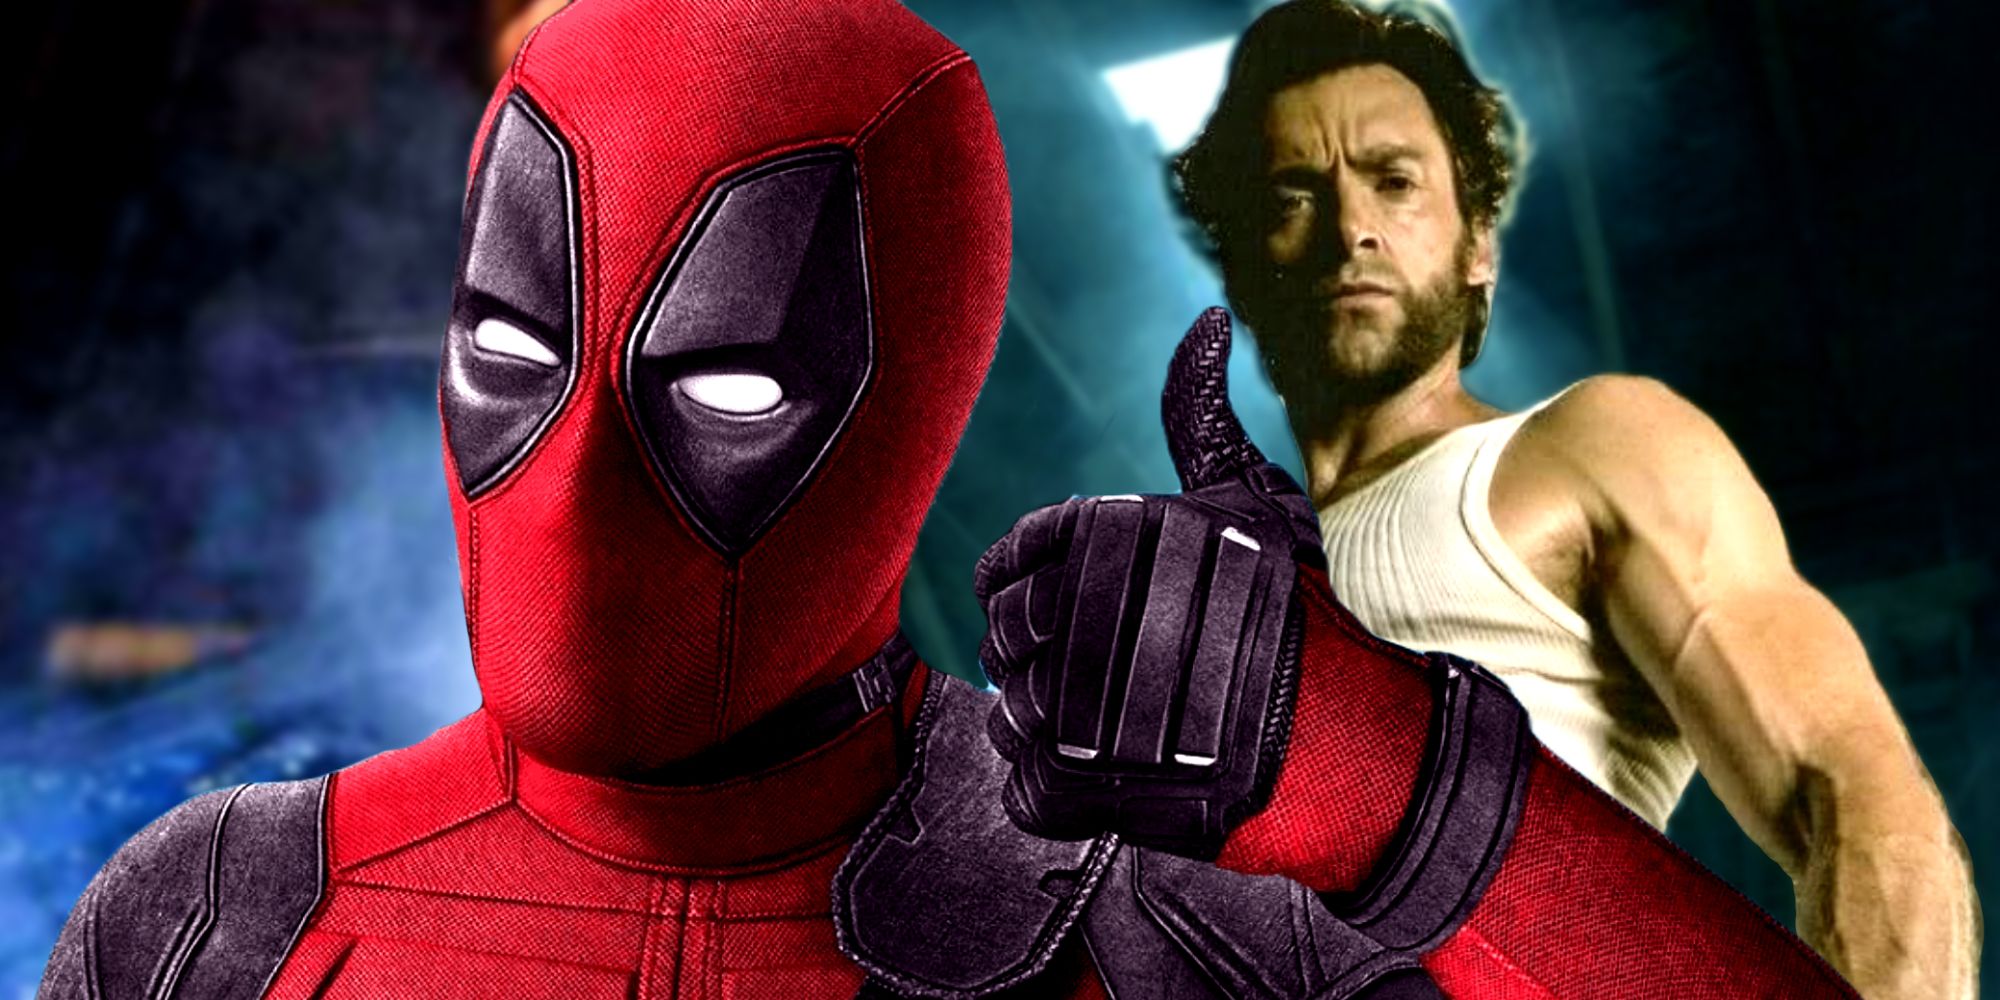 Las nuevas variantes confirmadas de Deadpool y Wolverine pueden canjear la peor película de X-Men 15 años después de su lanzamiento